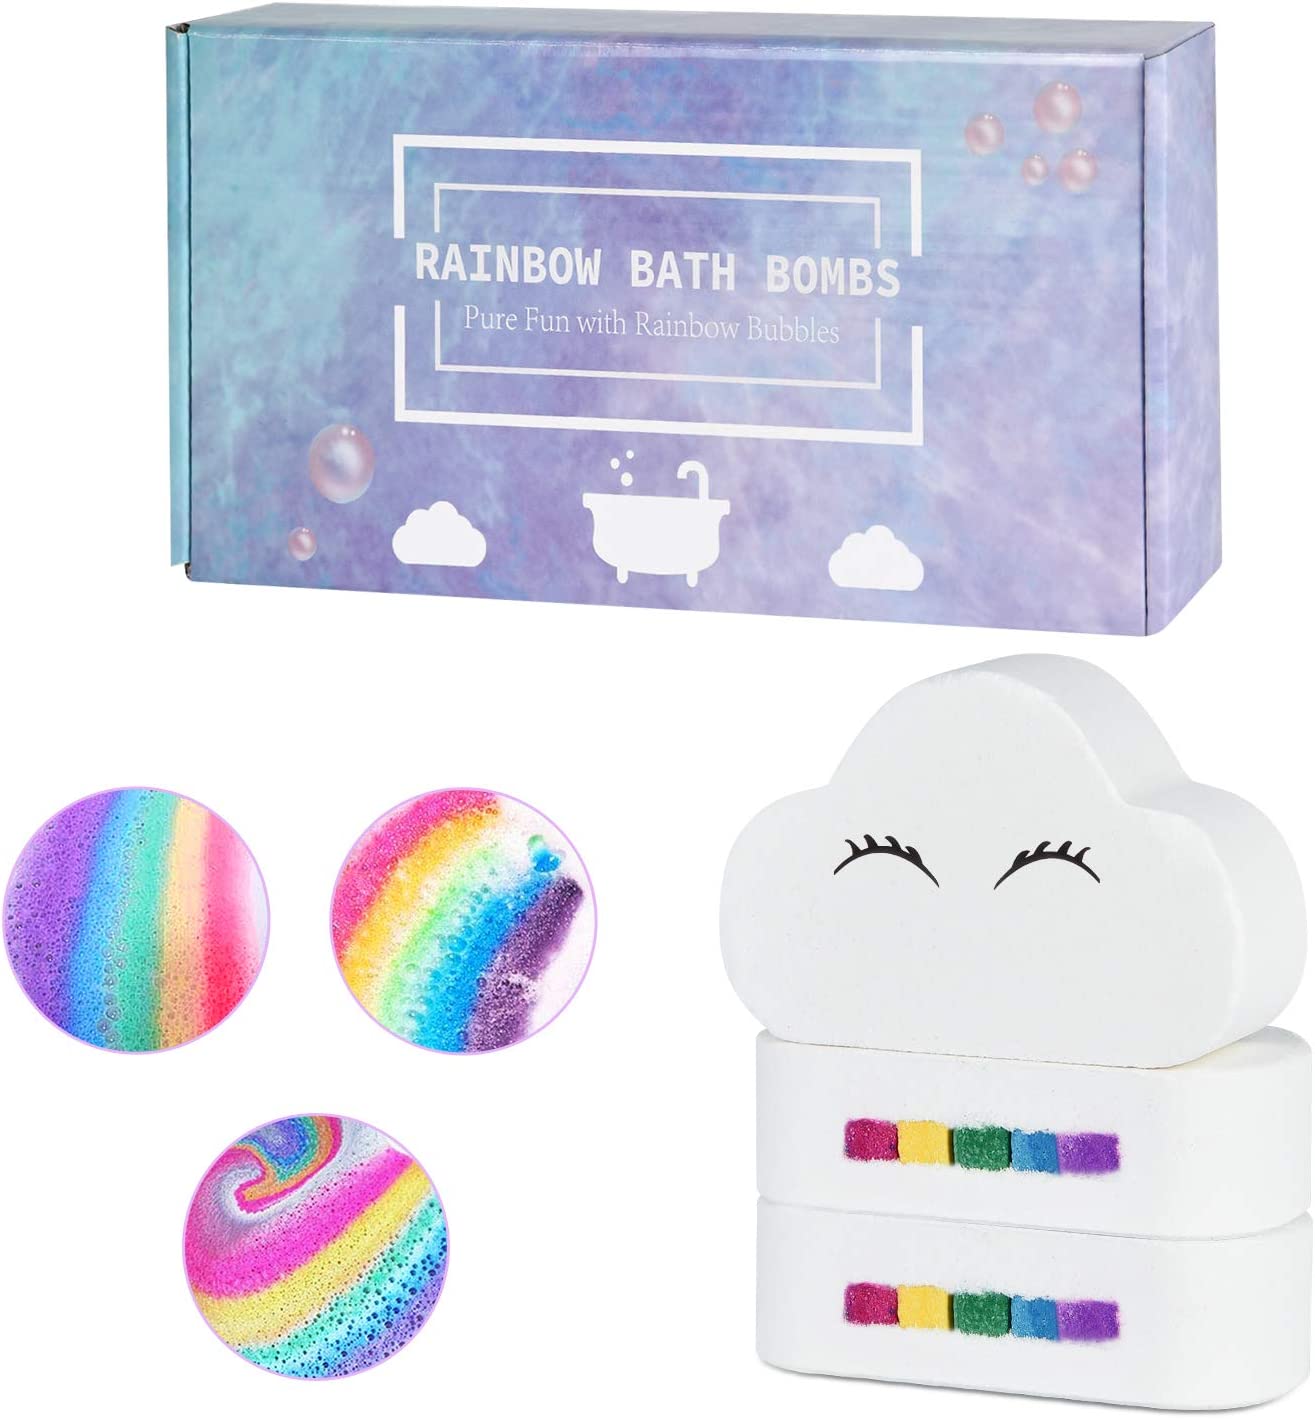 Bomba de baño arcoíris para niños, niñas y mujeres.